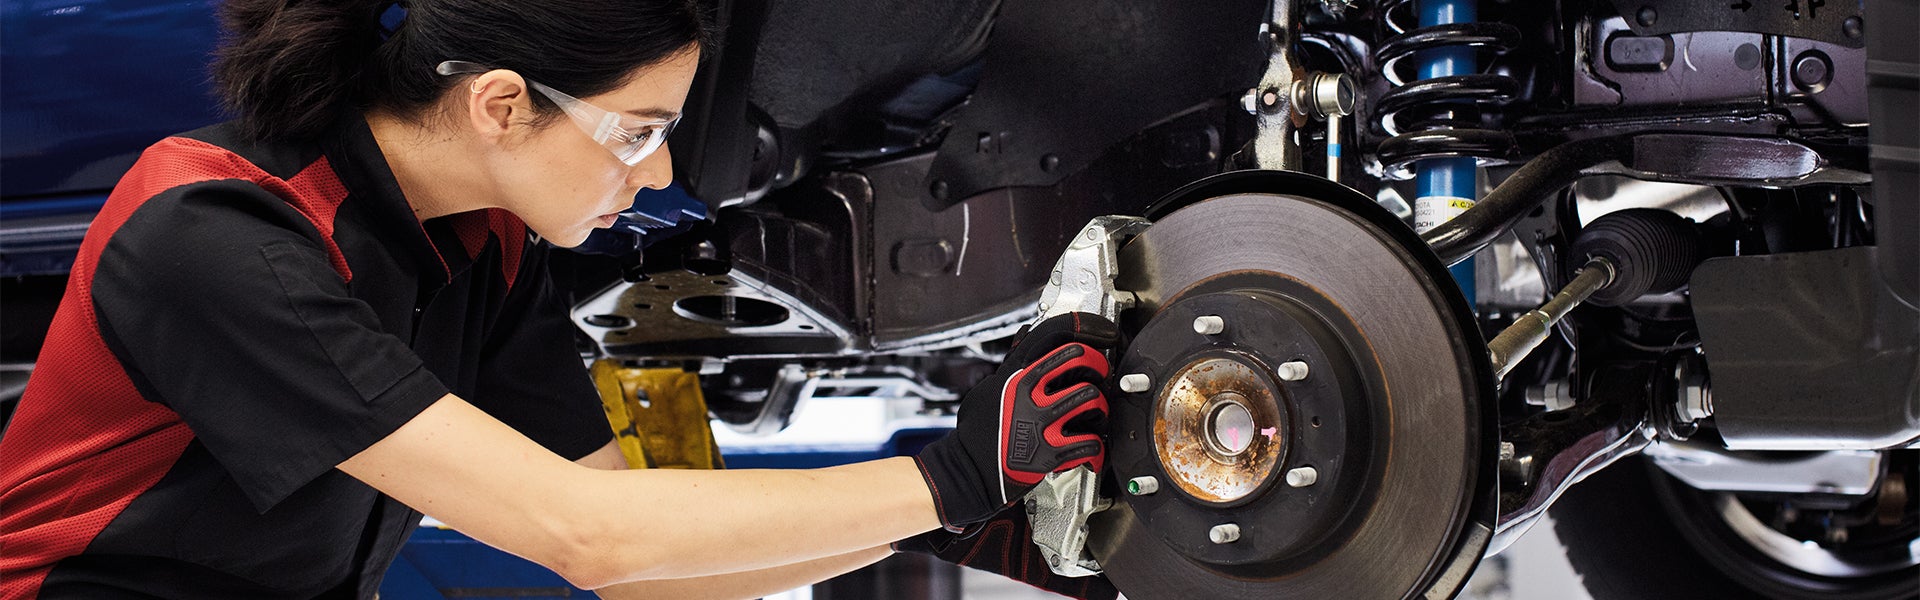 Bennett Toyota of Allentown is a Car Dealership near Emmaus, PA | Toyota mechanic fixing brakes